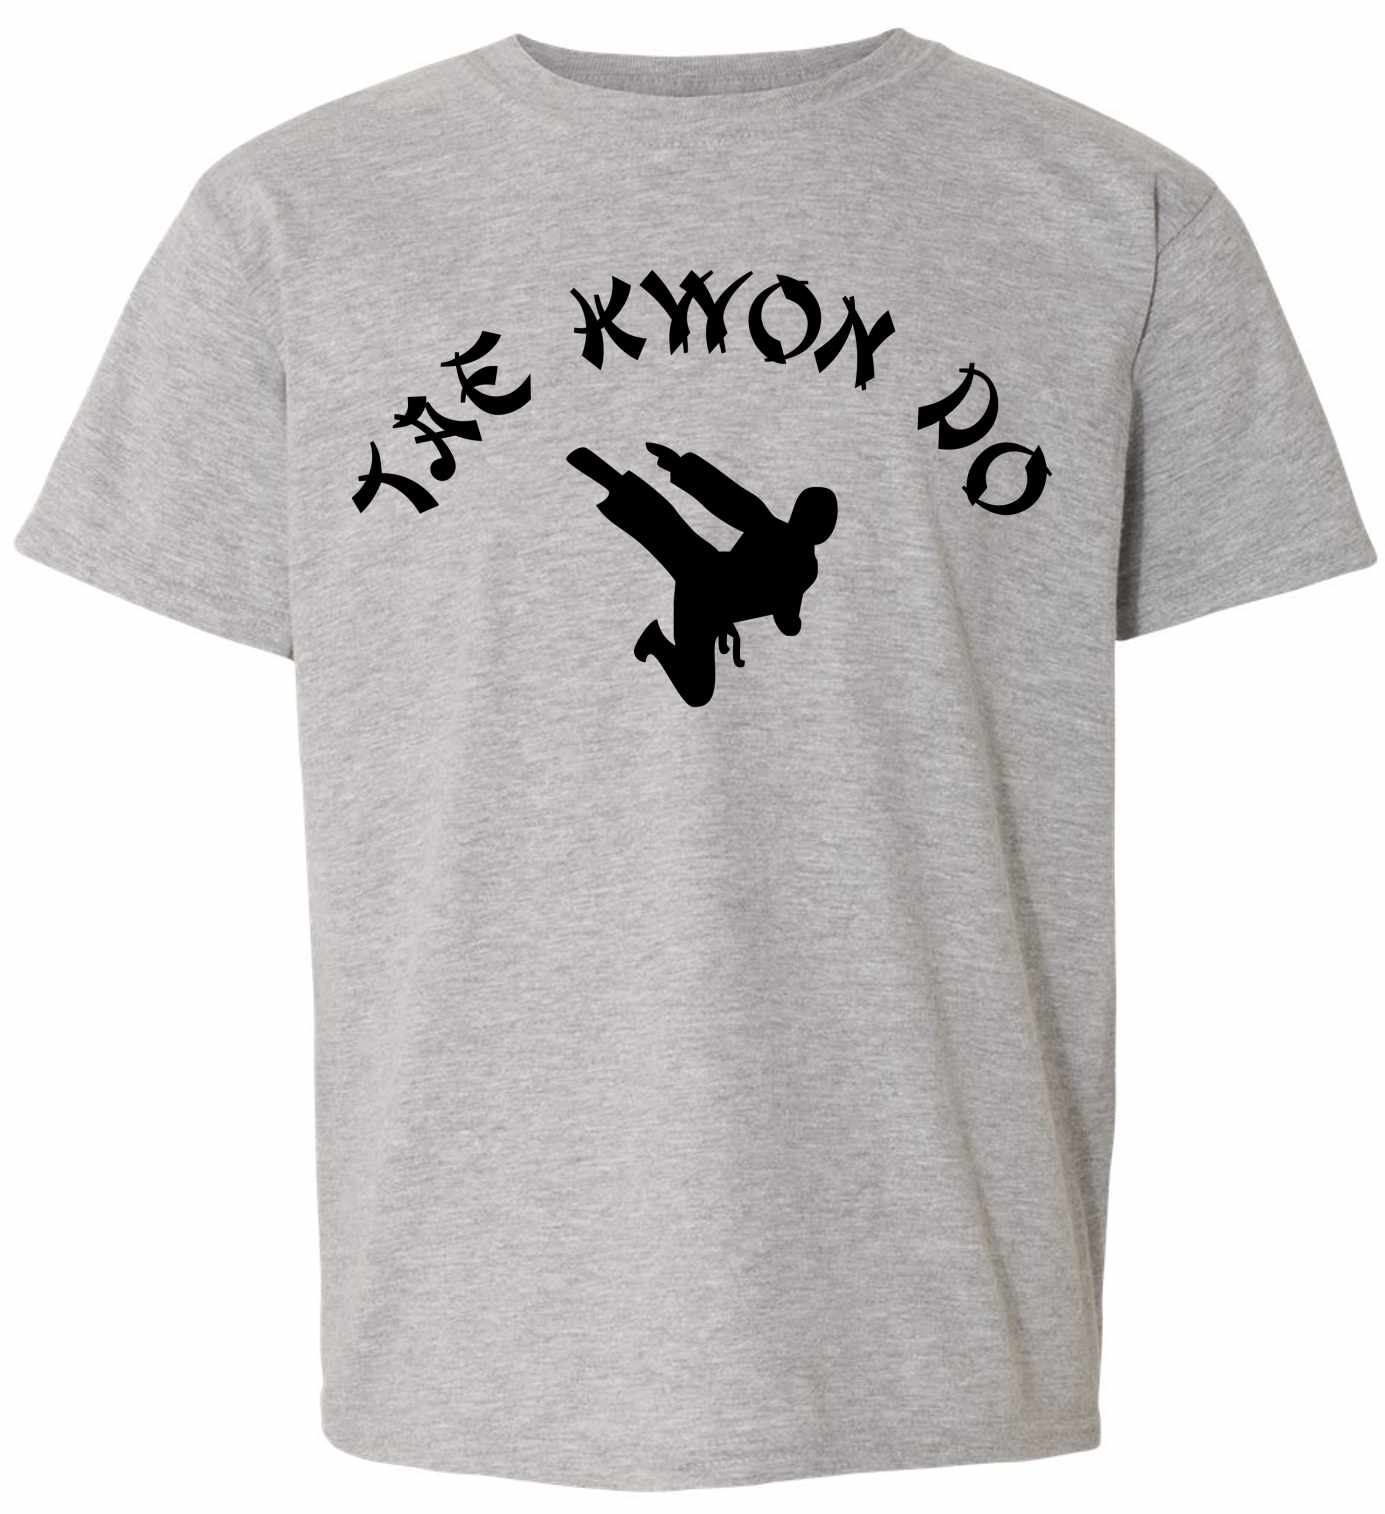 TAE KWON DO on Youth T-Shirt (#748-201)